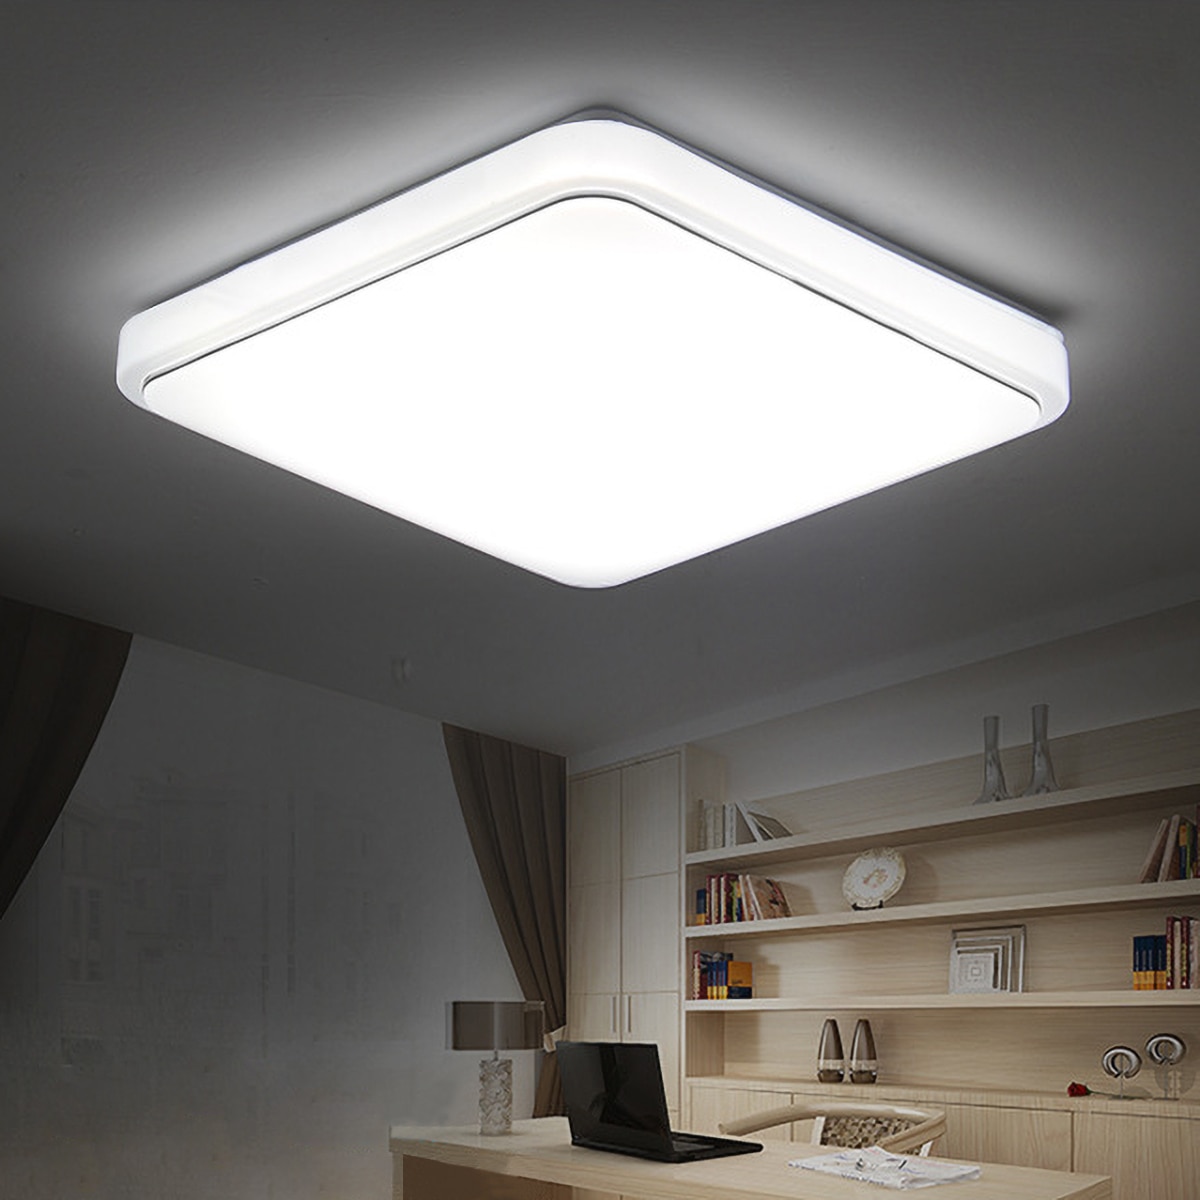 Как выбрать светодиодный потолочный светильник для дома